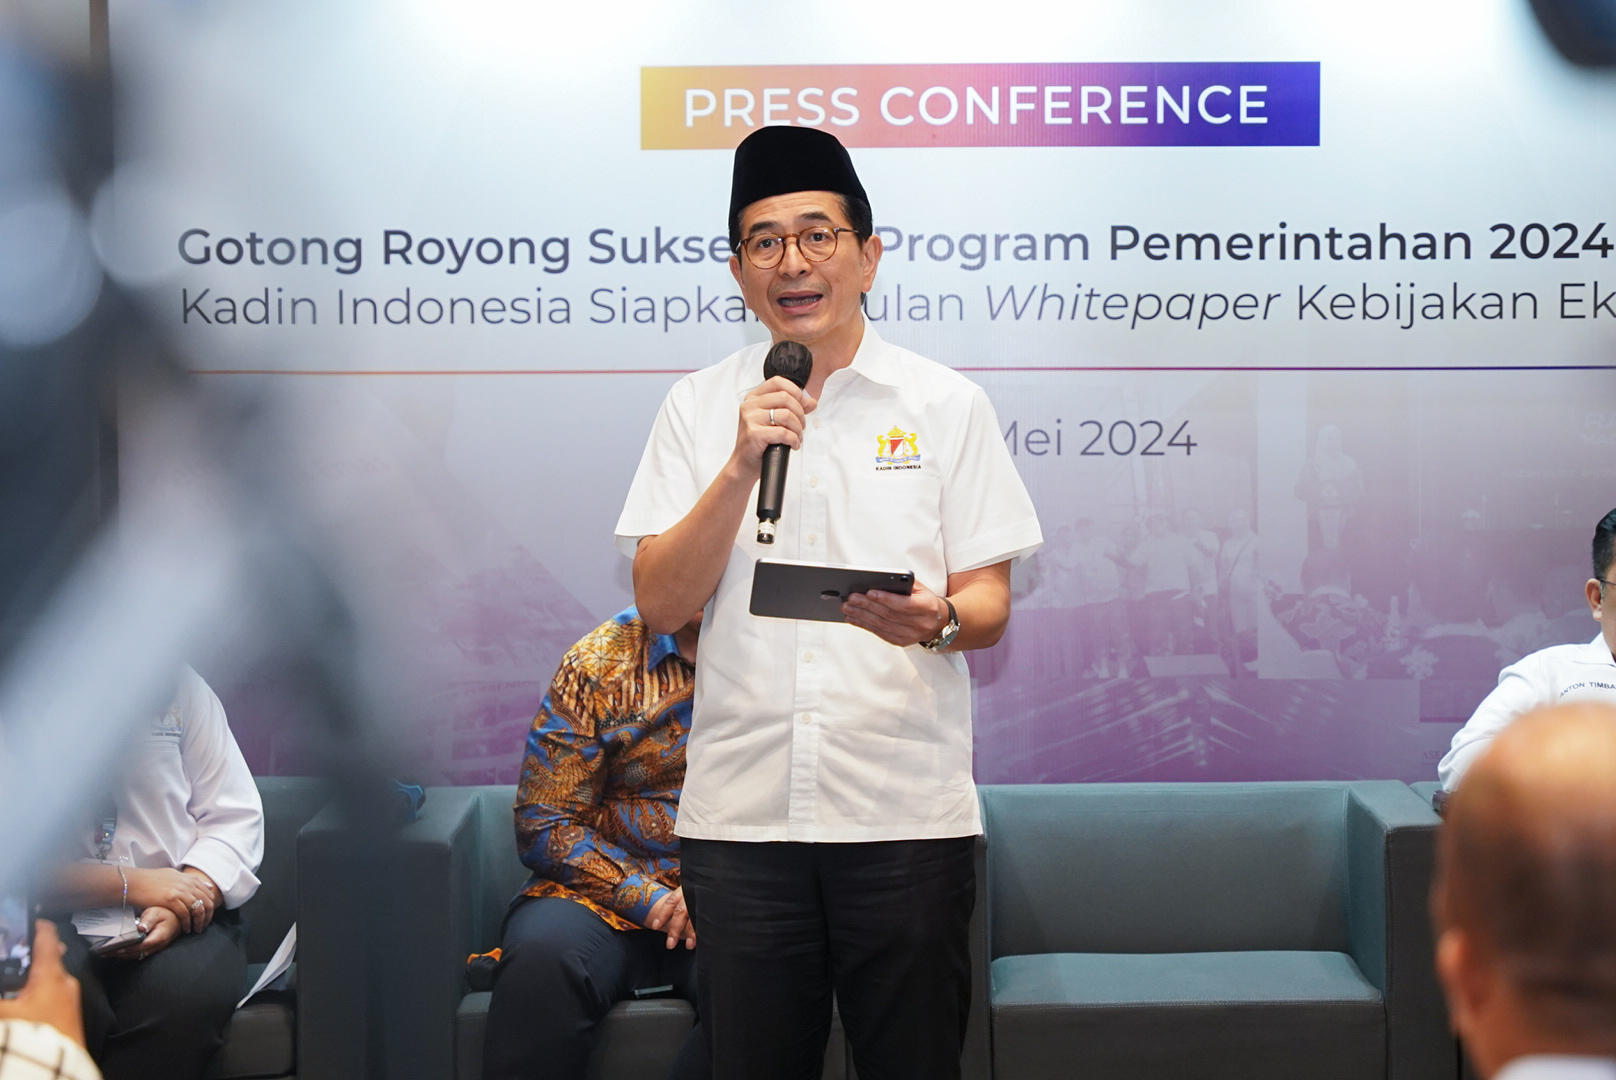 Kadin Indonesia Siapkan Usulan Whitepaper Kebijakan Ekonomi, Sukseskan Program Pemerintah 2024-2029